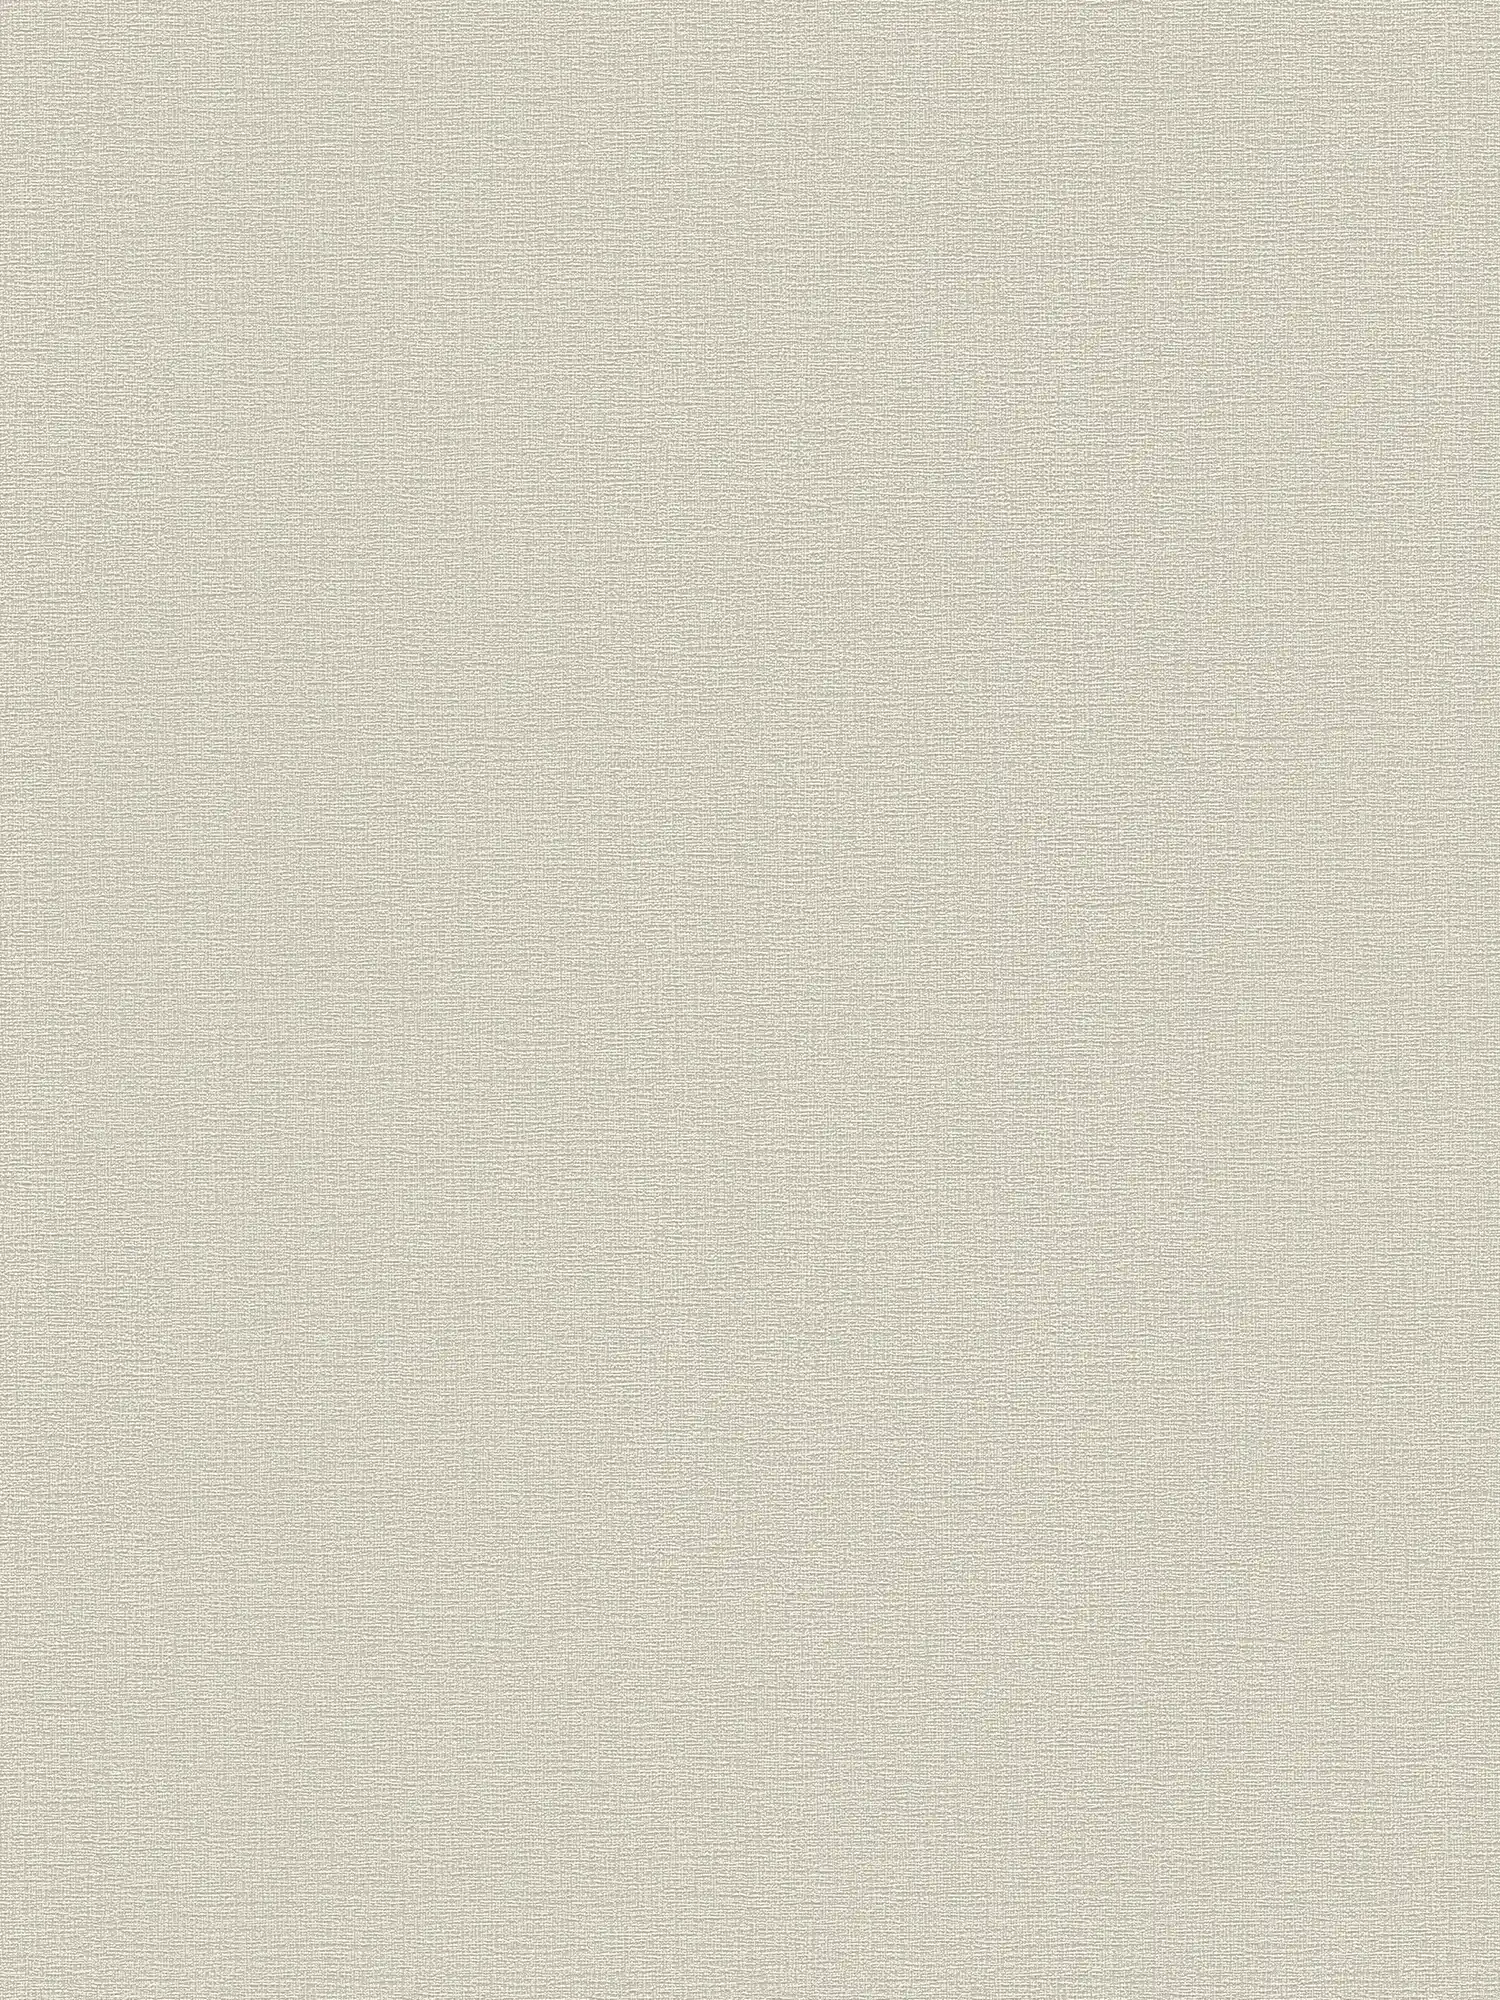 Carta da parati beige-grigia con texture tessile in look vintage
